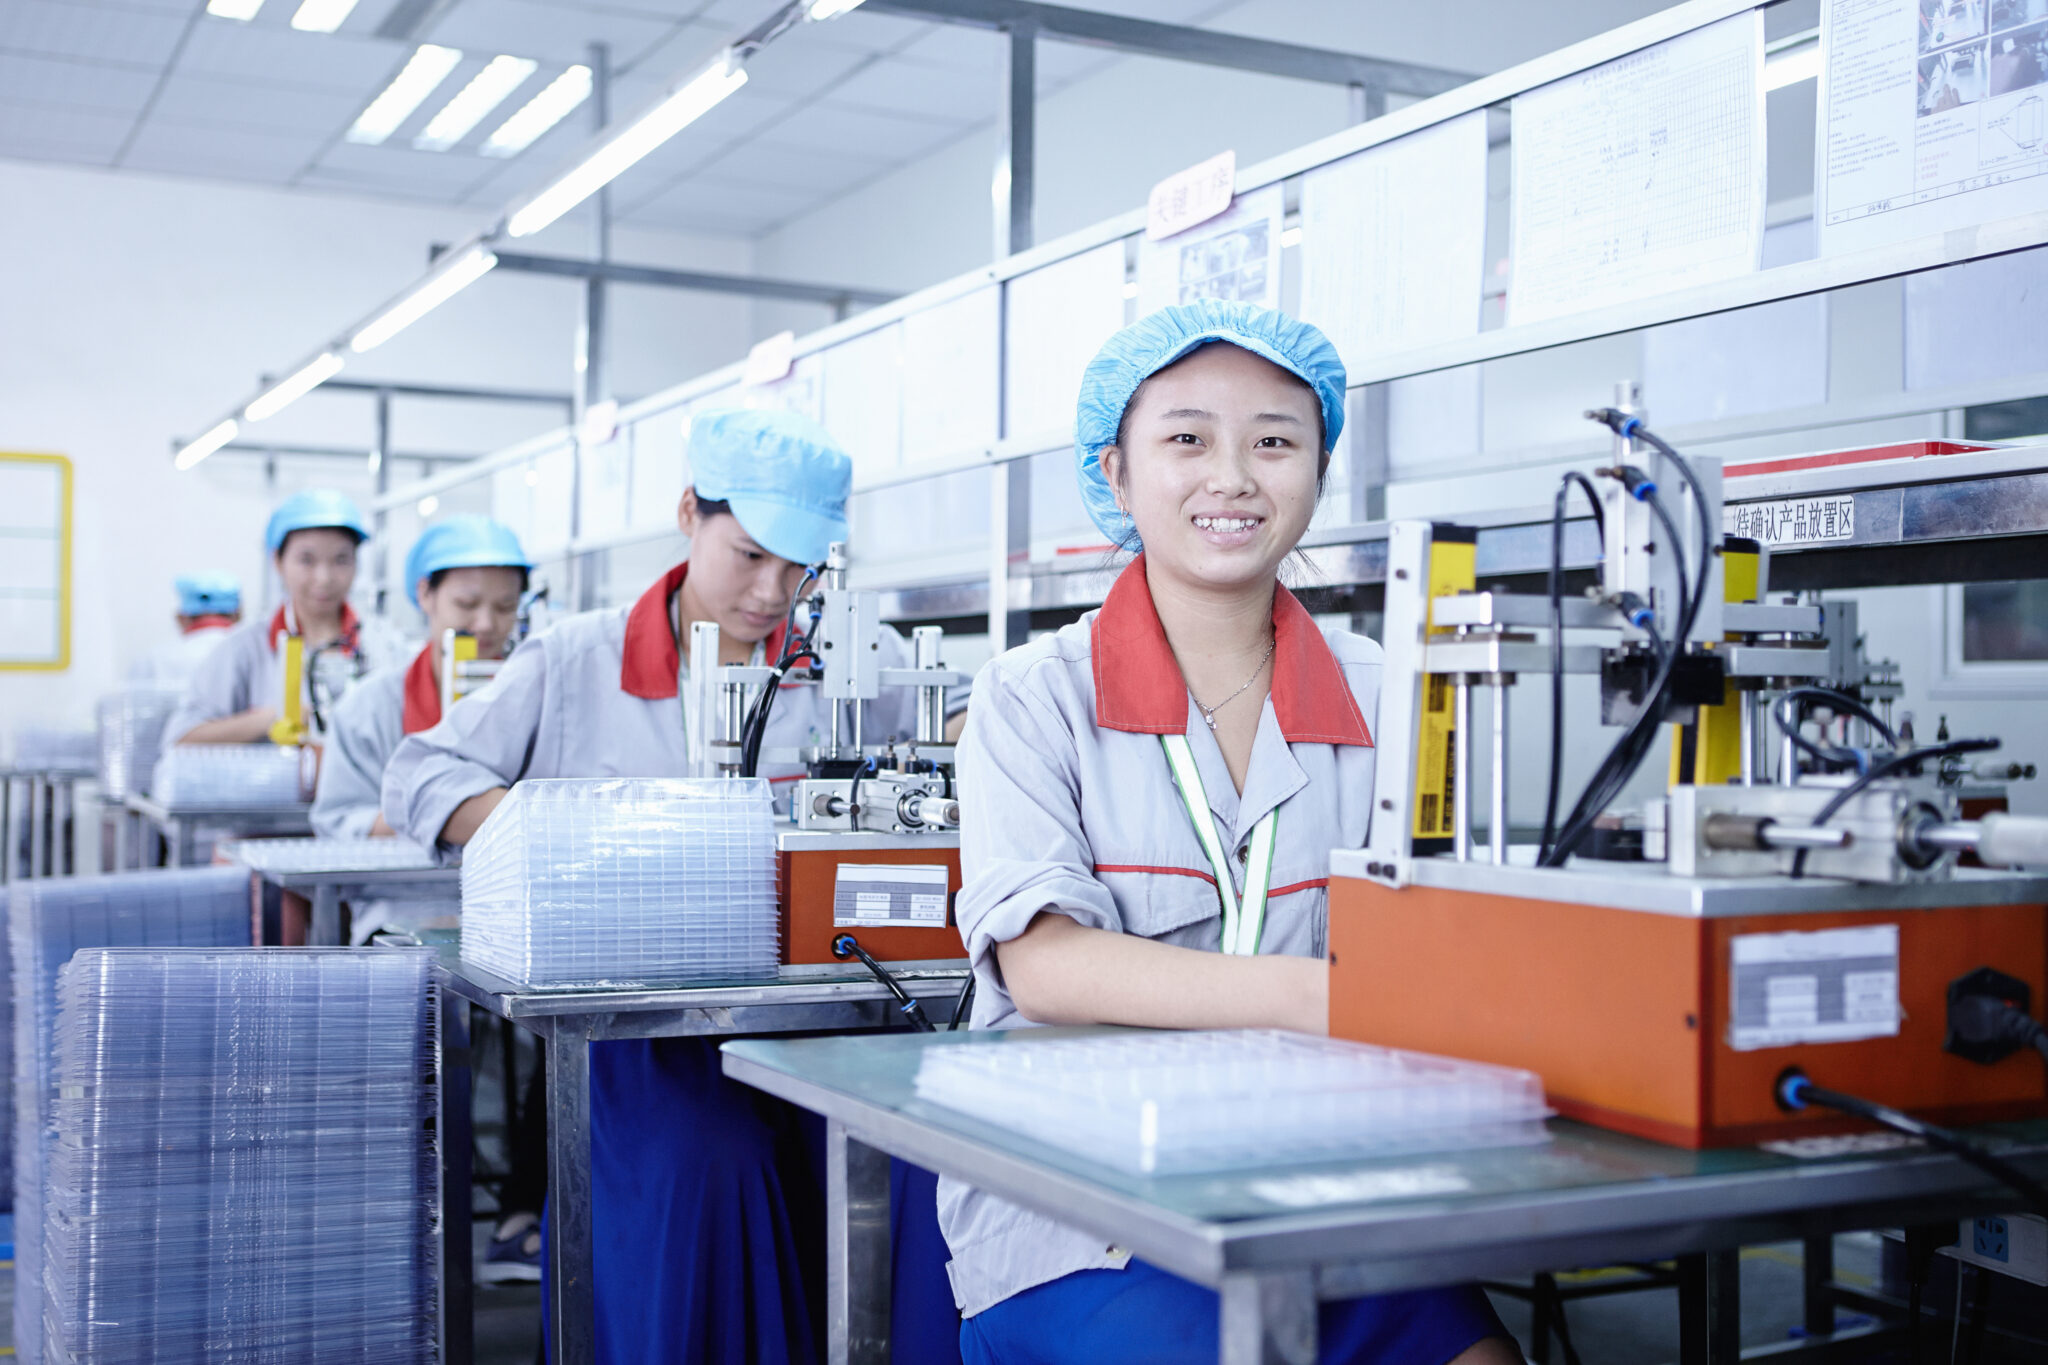 Fabrica china como uno de los Proveedores directos para importar en china